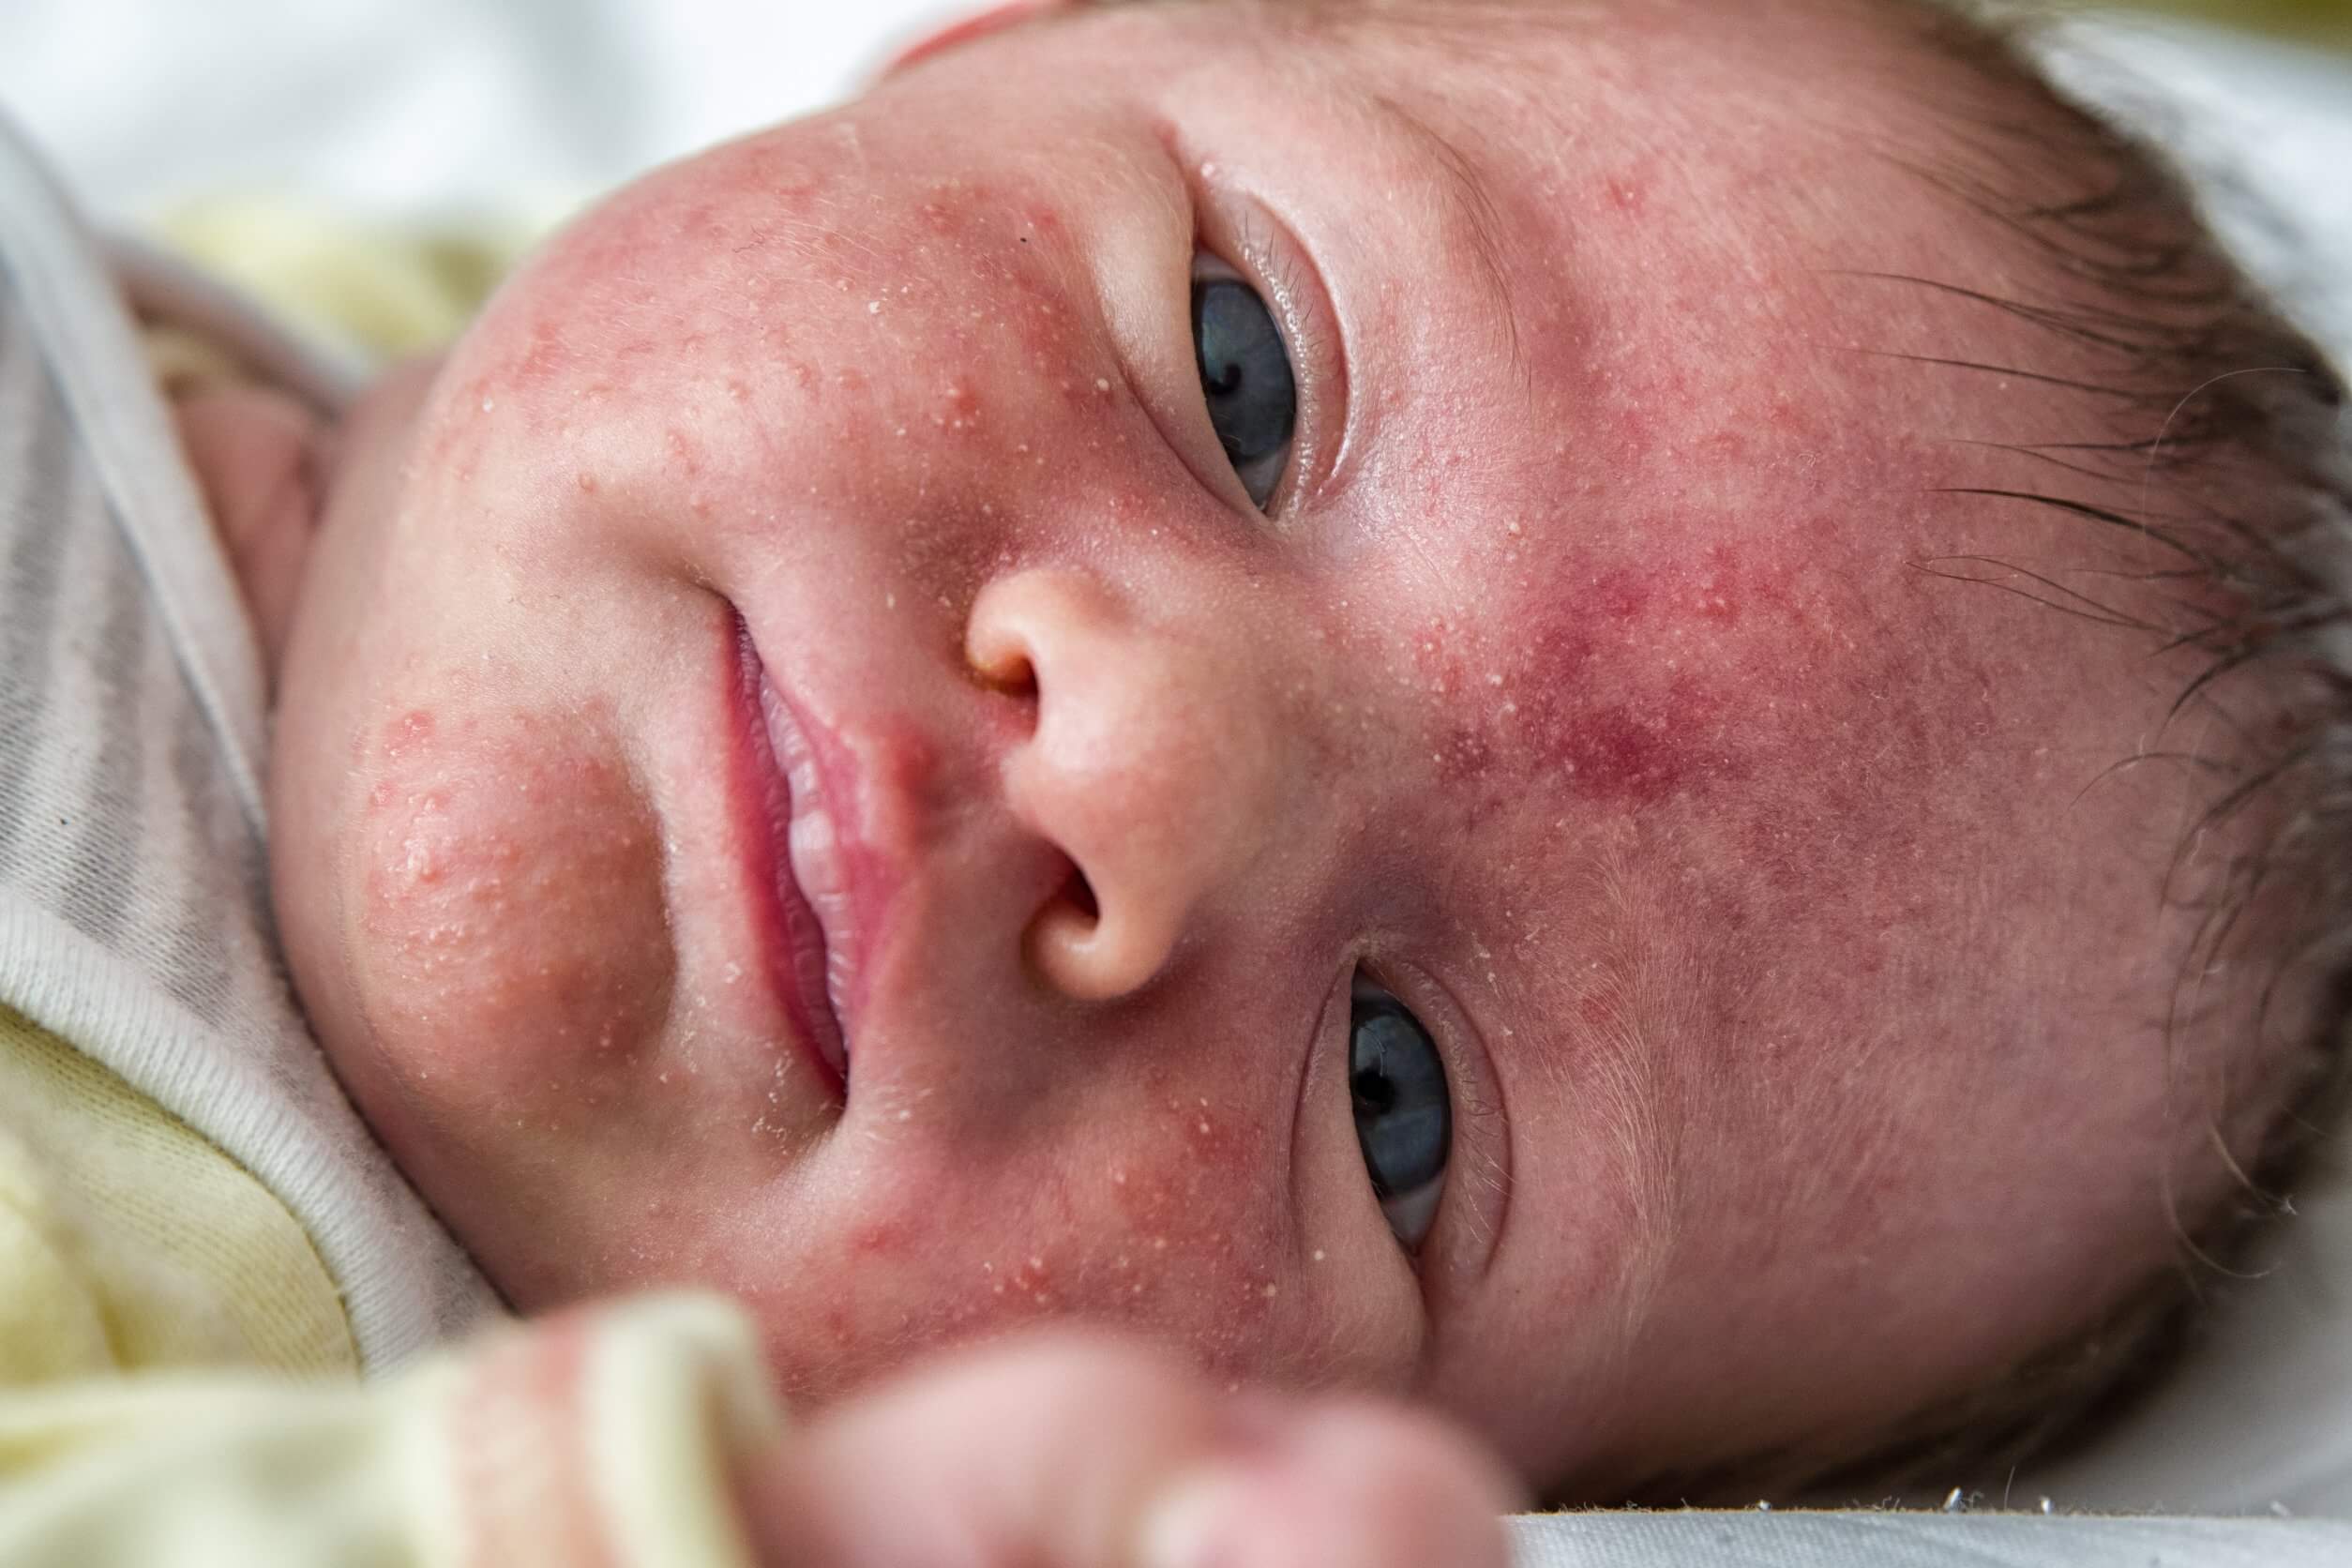 La costra láctea no es lo mismo que el acné neonatal